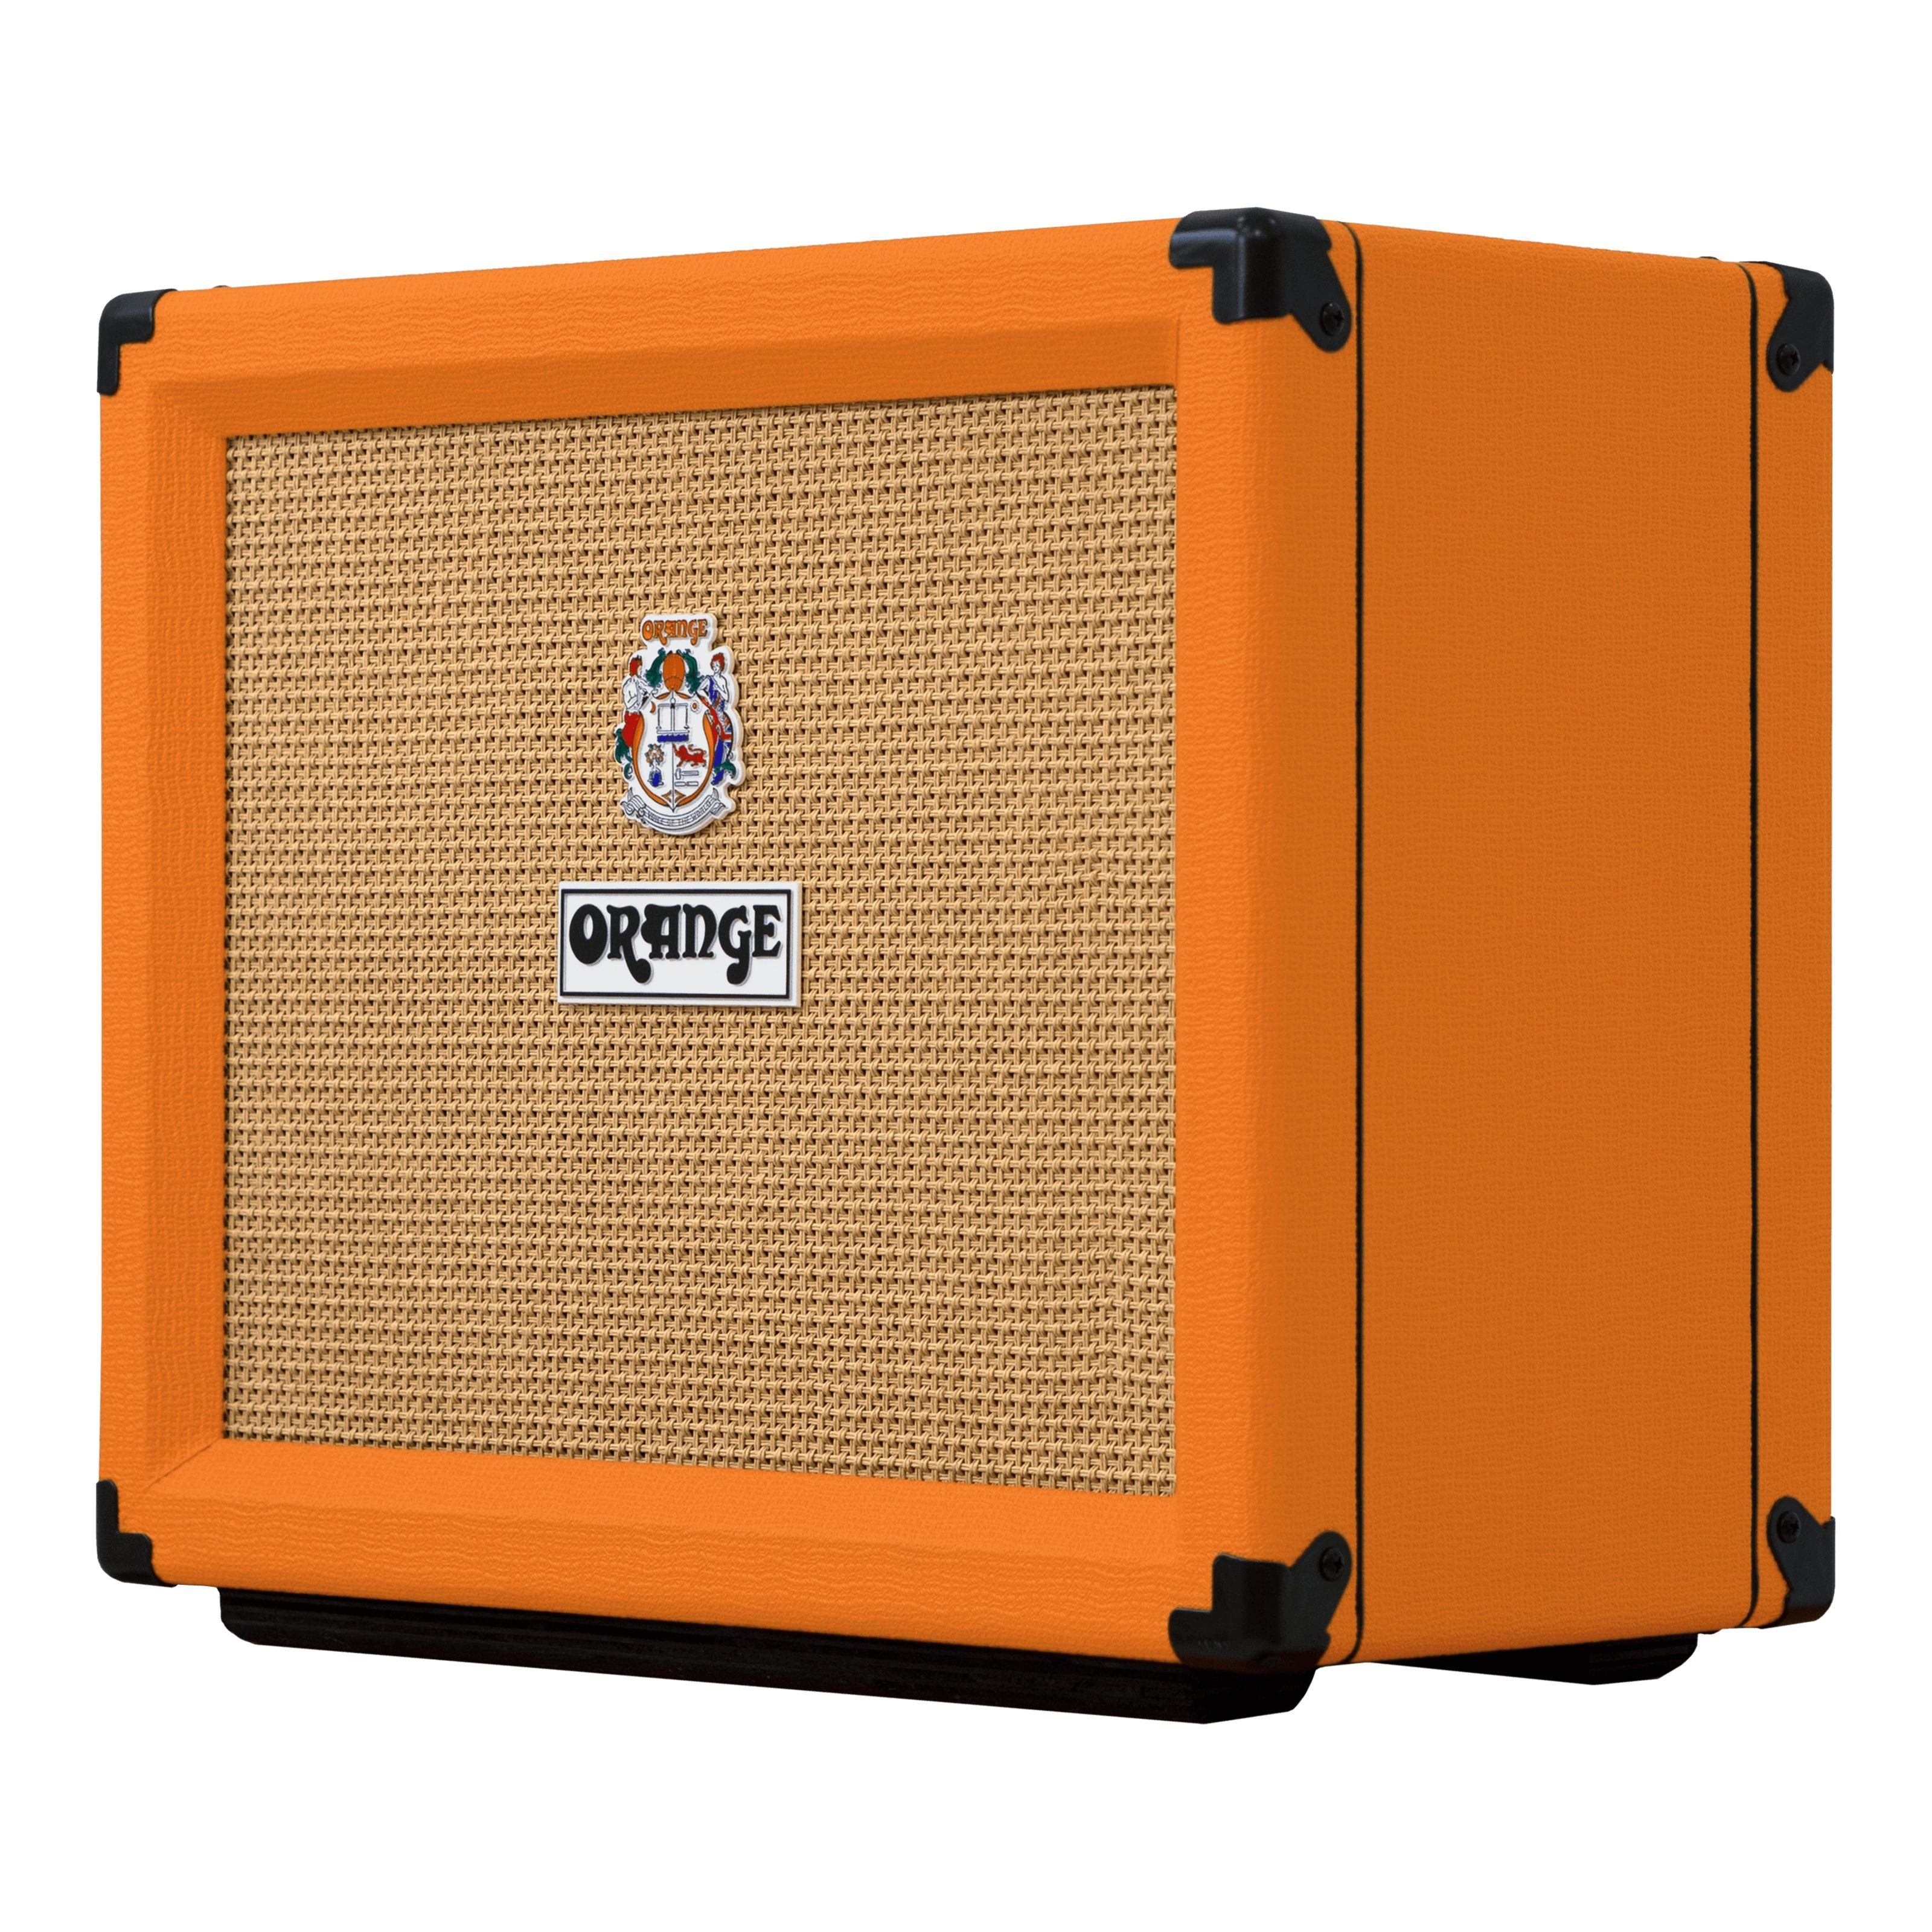 Orange Verstärker (Rocker Verstärker Combo für - 15 E-Gitarre) Röhren